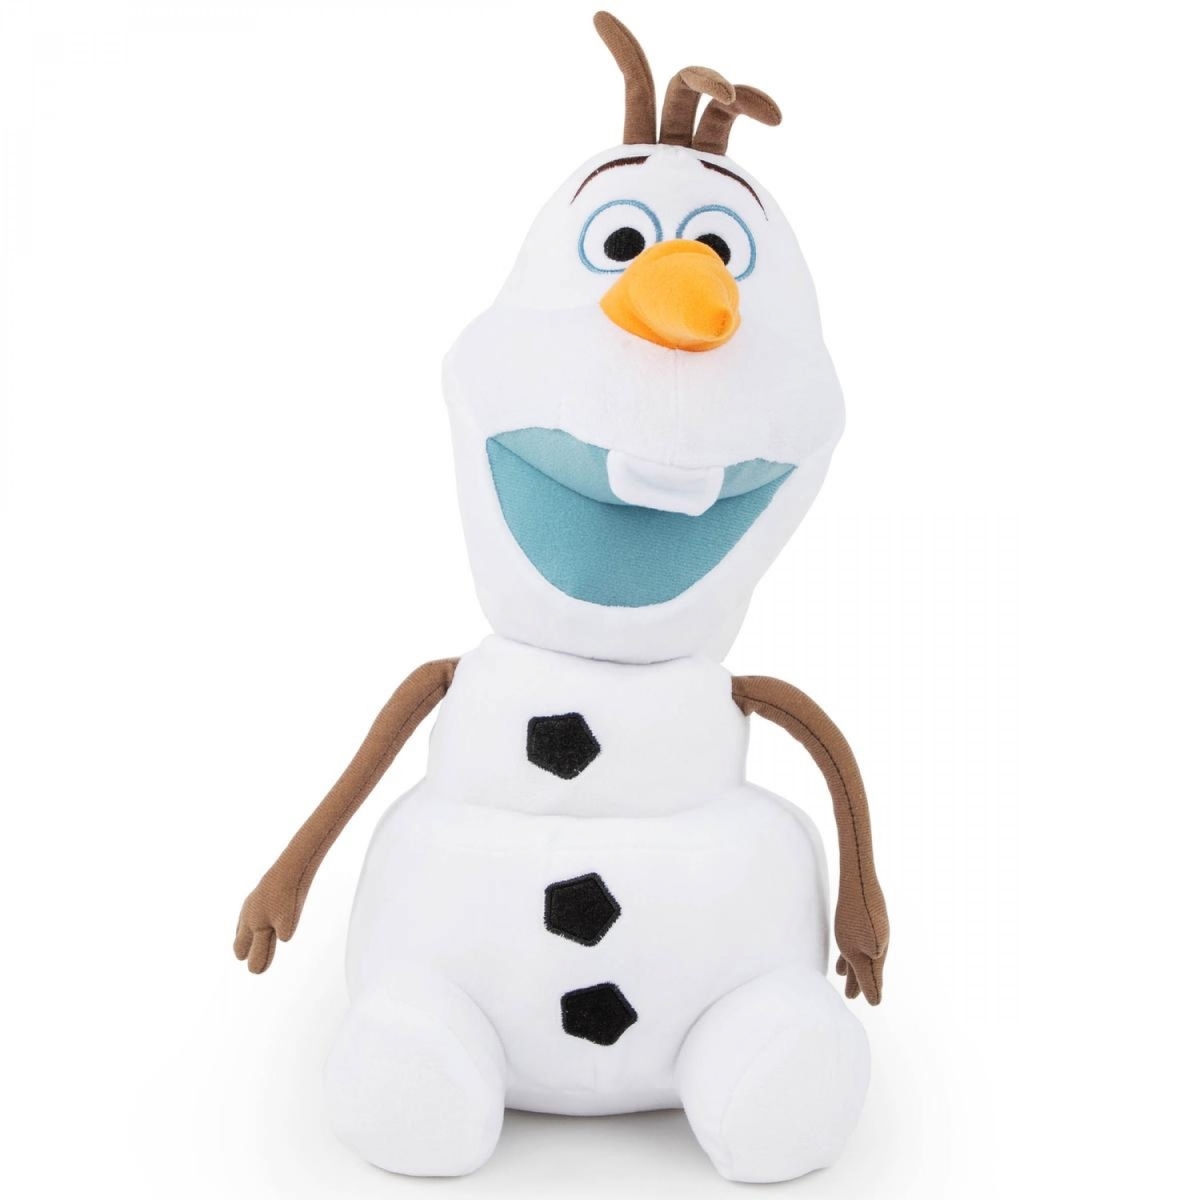 Disney 849590 17 in. Disney 2 Olaf Plush Stuffed Pillow Buddy